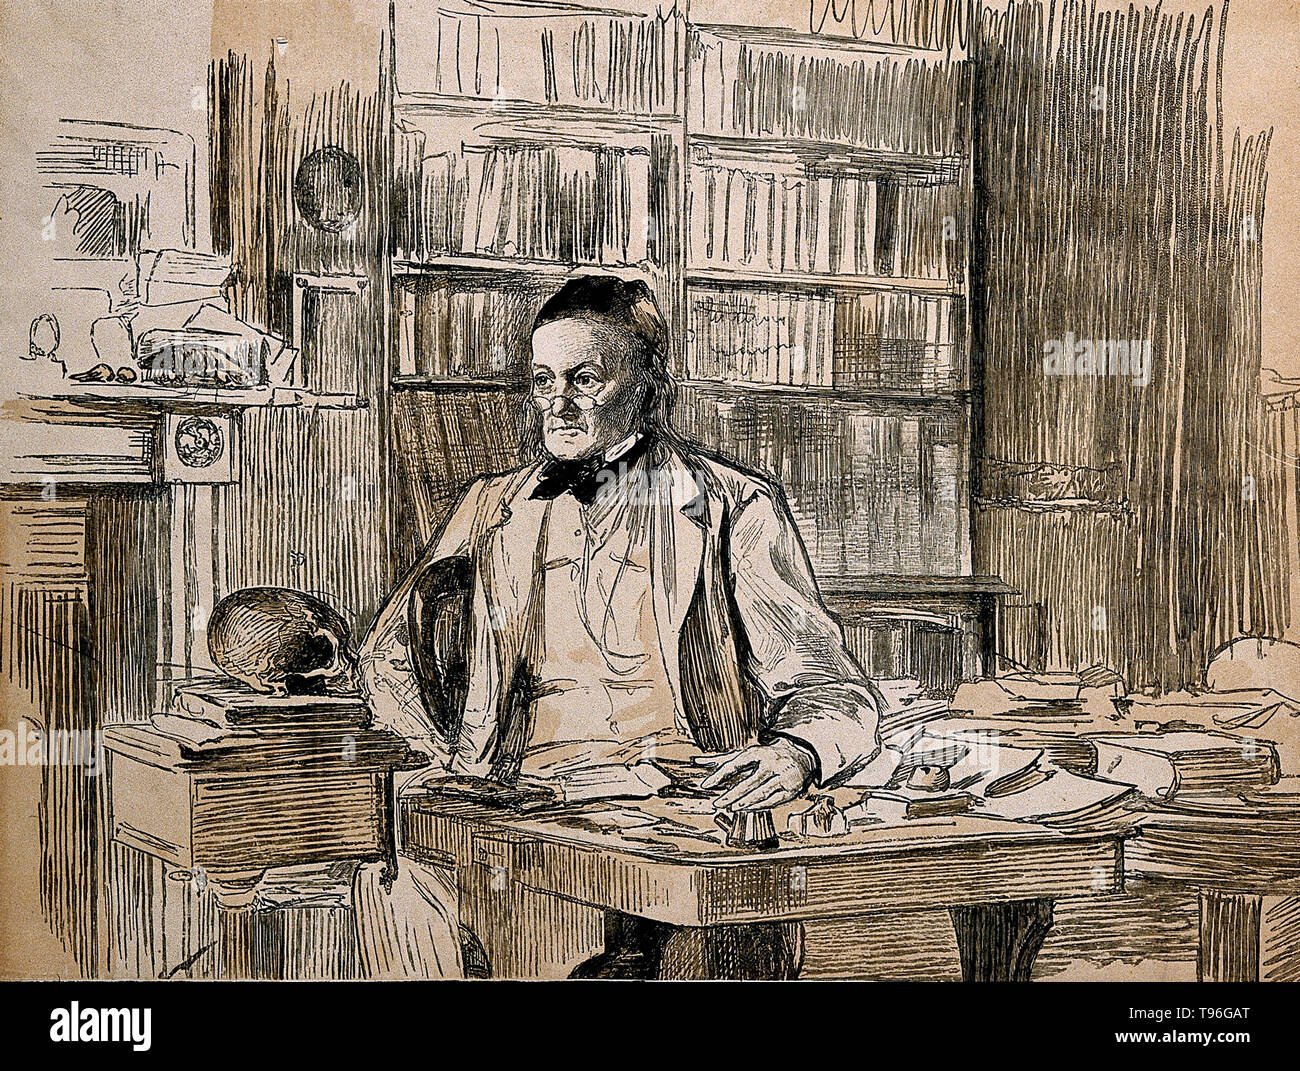 Richard Owen (20. Juli 1804 - 18. Dezember 1892) war ein englischer Biologe, vergleichende Anatom und Paläontologe. Eine seiner Positionen war, dass der prosector für den London Zoo, was bedeutete, dass er hatte zu sezieren und jeder Zoo Tiere, die in der Gefangenschaft gestorben bewahren. Dies gab ihm große Erfahrung mit der Anatomie von exotischen Tieren. Er produzierte eine Vielzahl von wissenschaftlichen Arbeiten, aber ist wahrscheinlich am besten heute für die Ausprägung des Wortes Dinosauria erinnert. Stockfoto